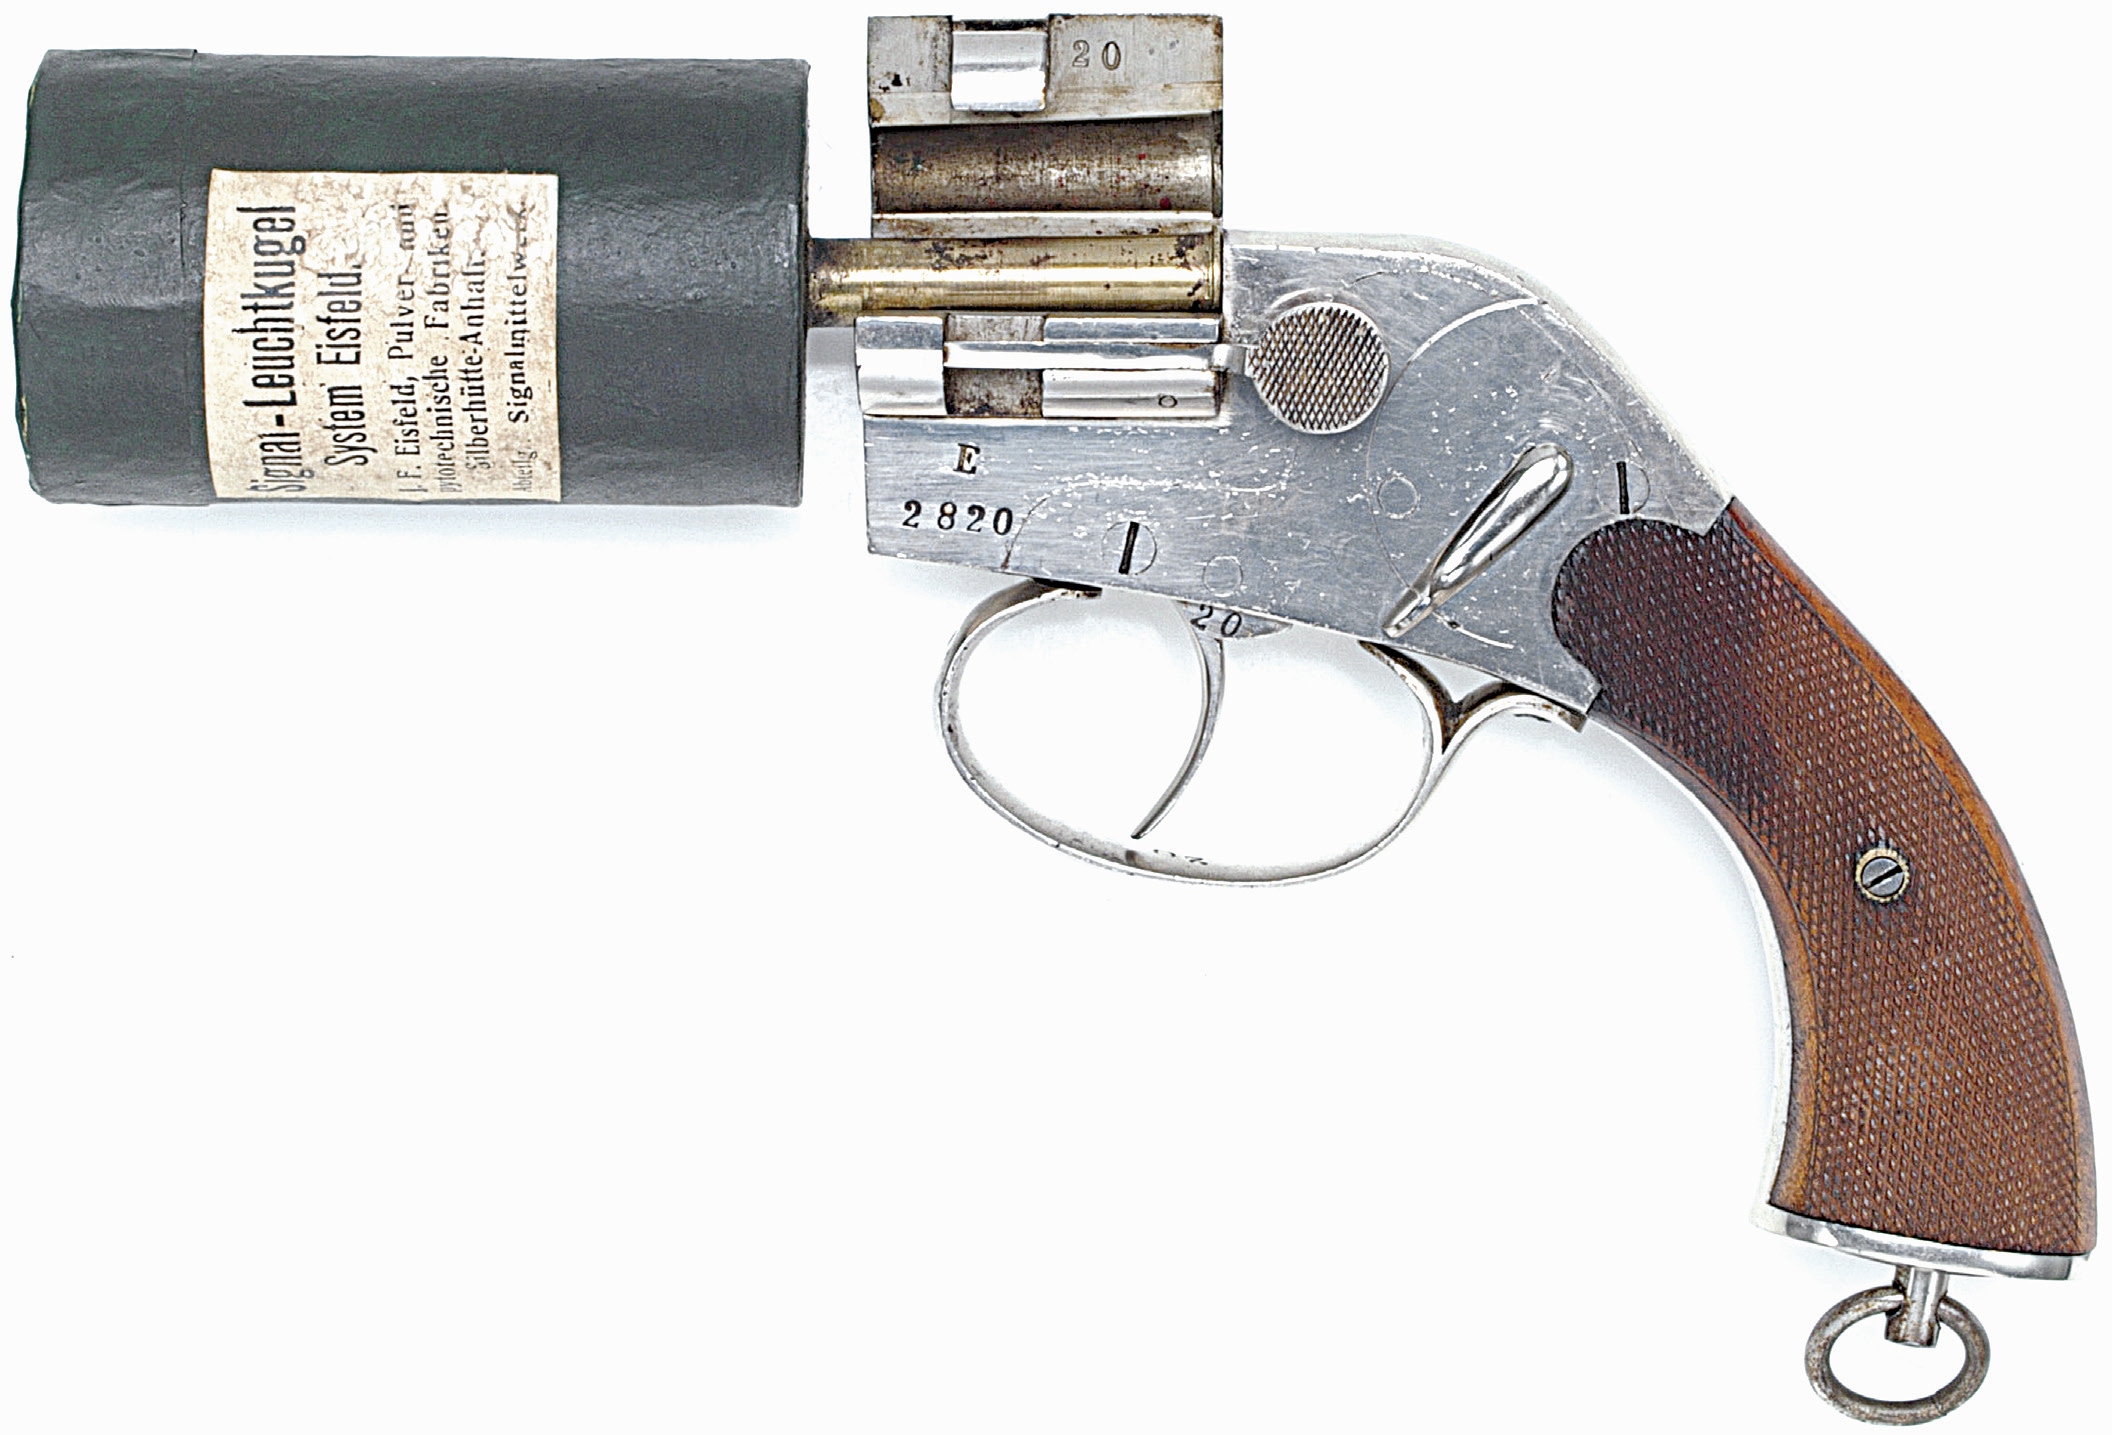 Produit pour l’aviation à partir de 1915, le pistolet allemand modèle « Eisfeld » se démarque par la conception très particulière de sa cartouche, qui permet de tirer une charge volumineuse dans un pistolet de dimensions extrêmement réduites.